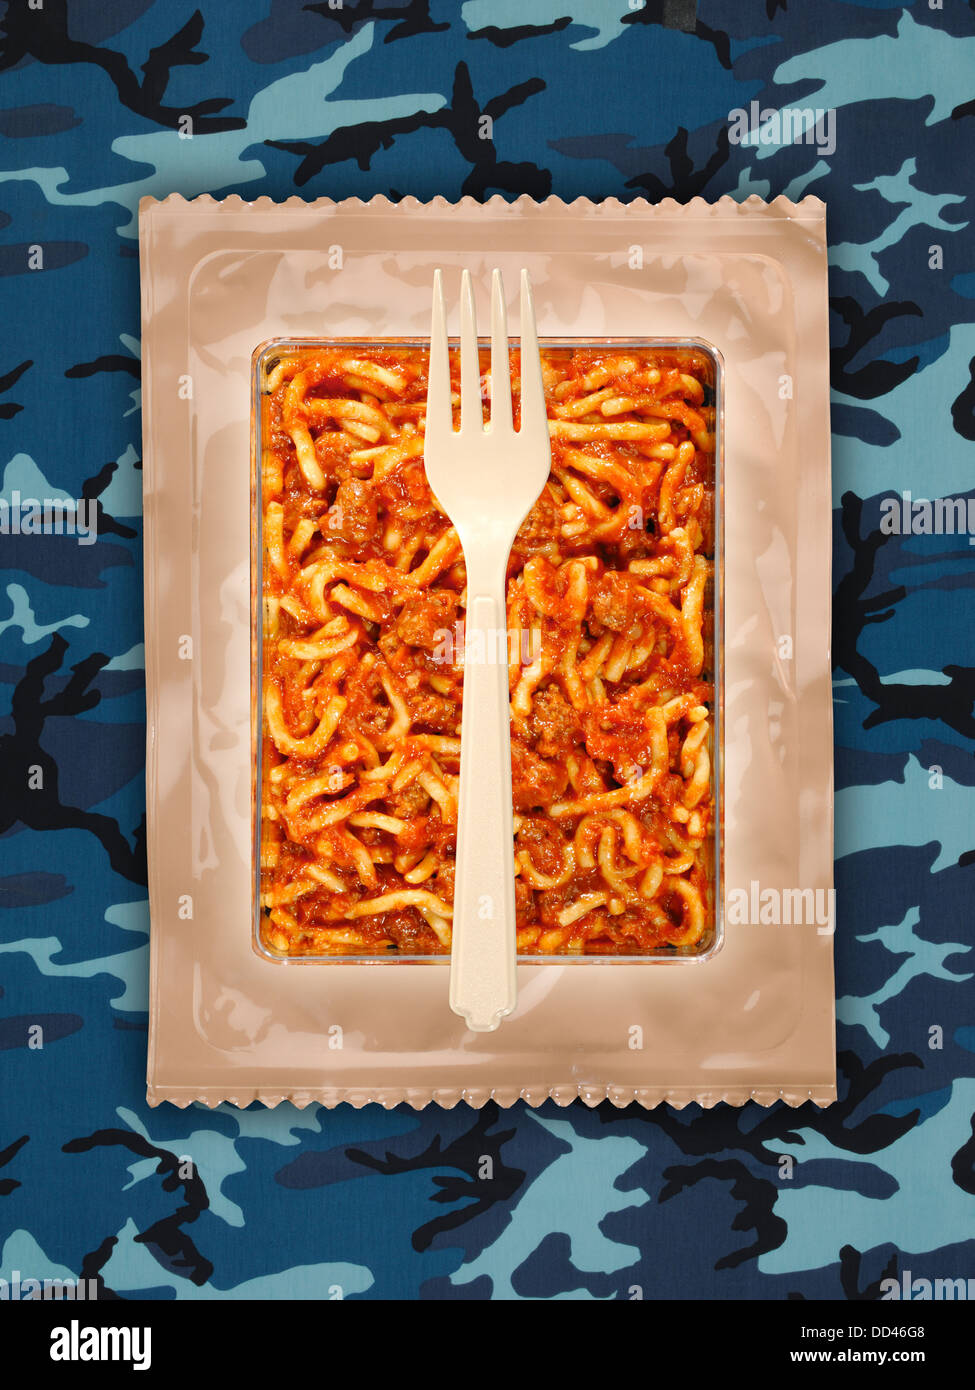 Raciones militares o MRE comidas listas para comer en un fondo camuflado. Los paquetes abiertos con utensilios de plástico. Foto de stock